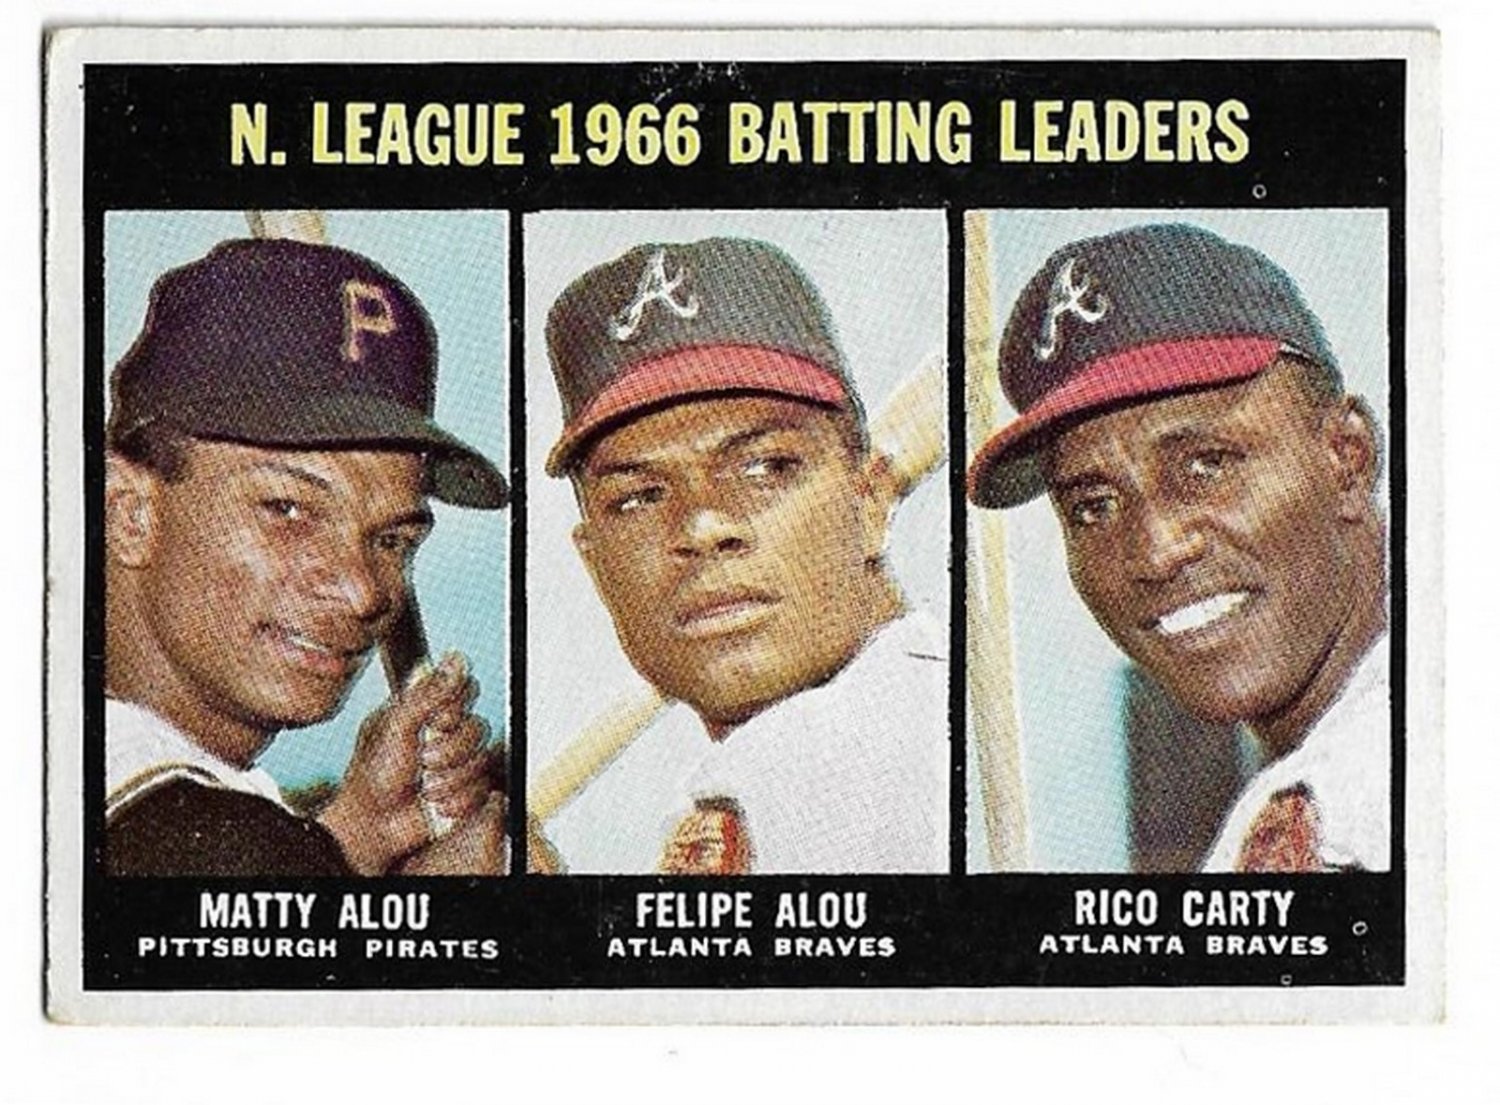 1967 Topps Baseball: The 1967 Braves